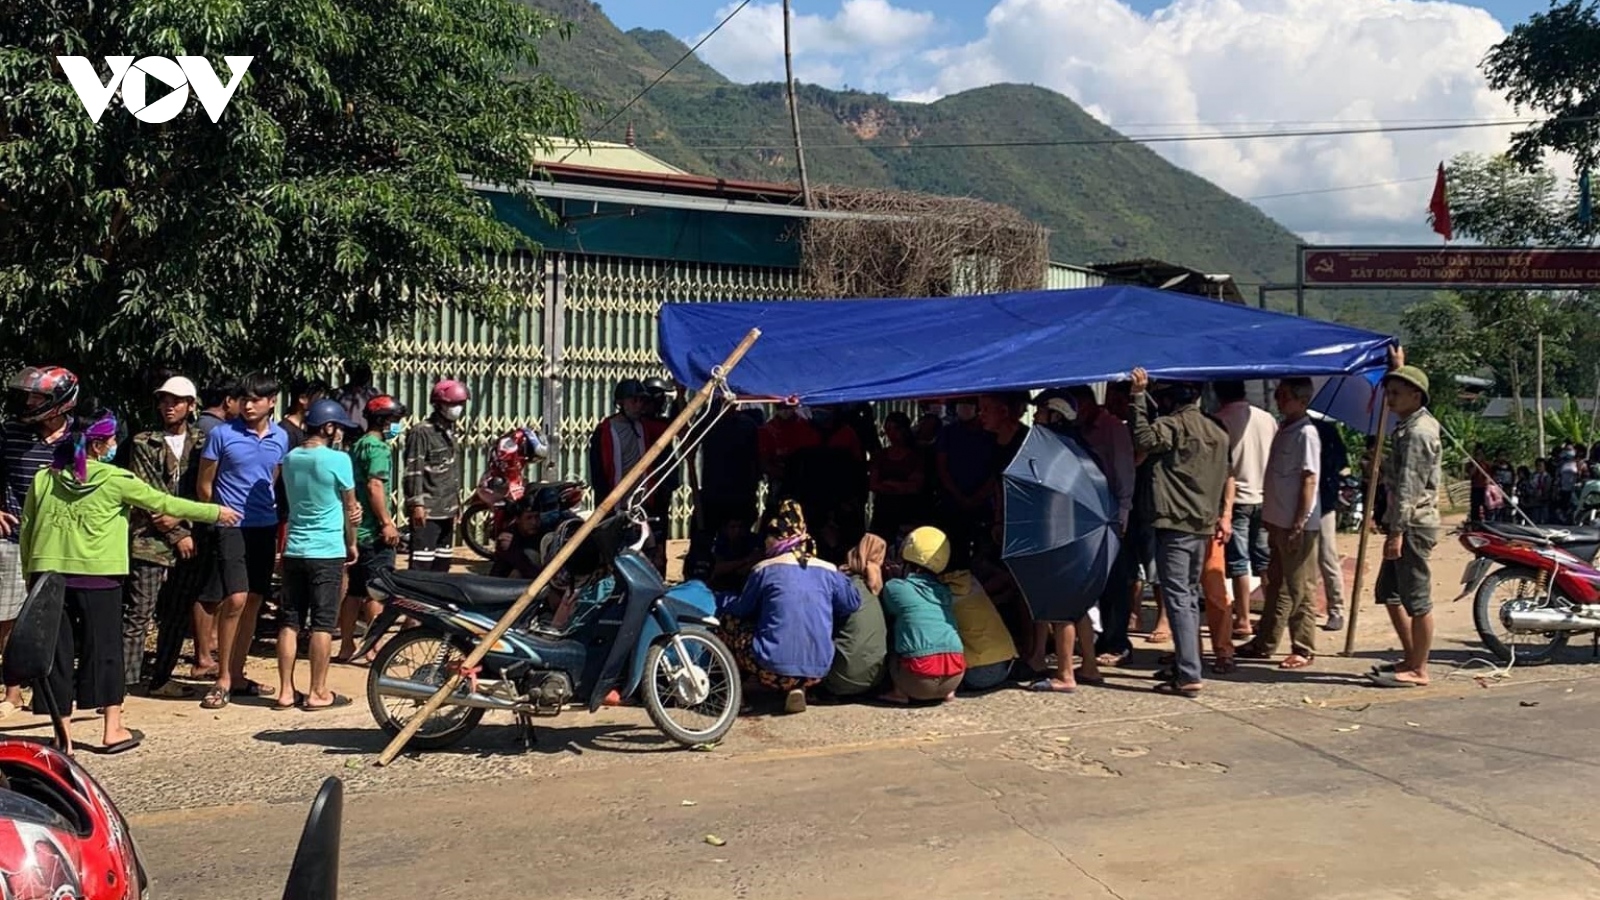 Văng khỏi xe đưa đón, 4 học sinh ở Sơn La thương vong